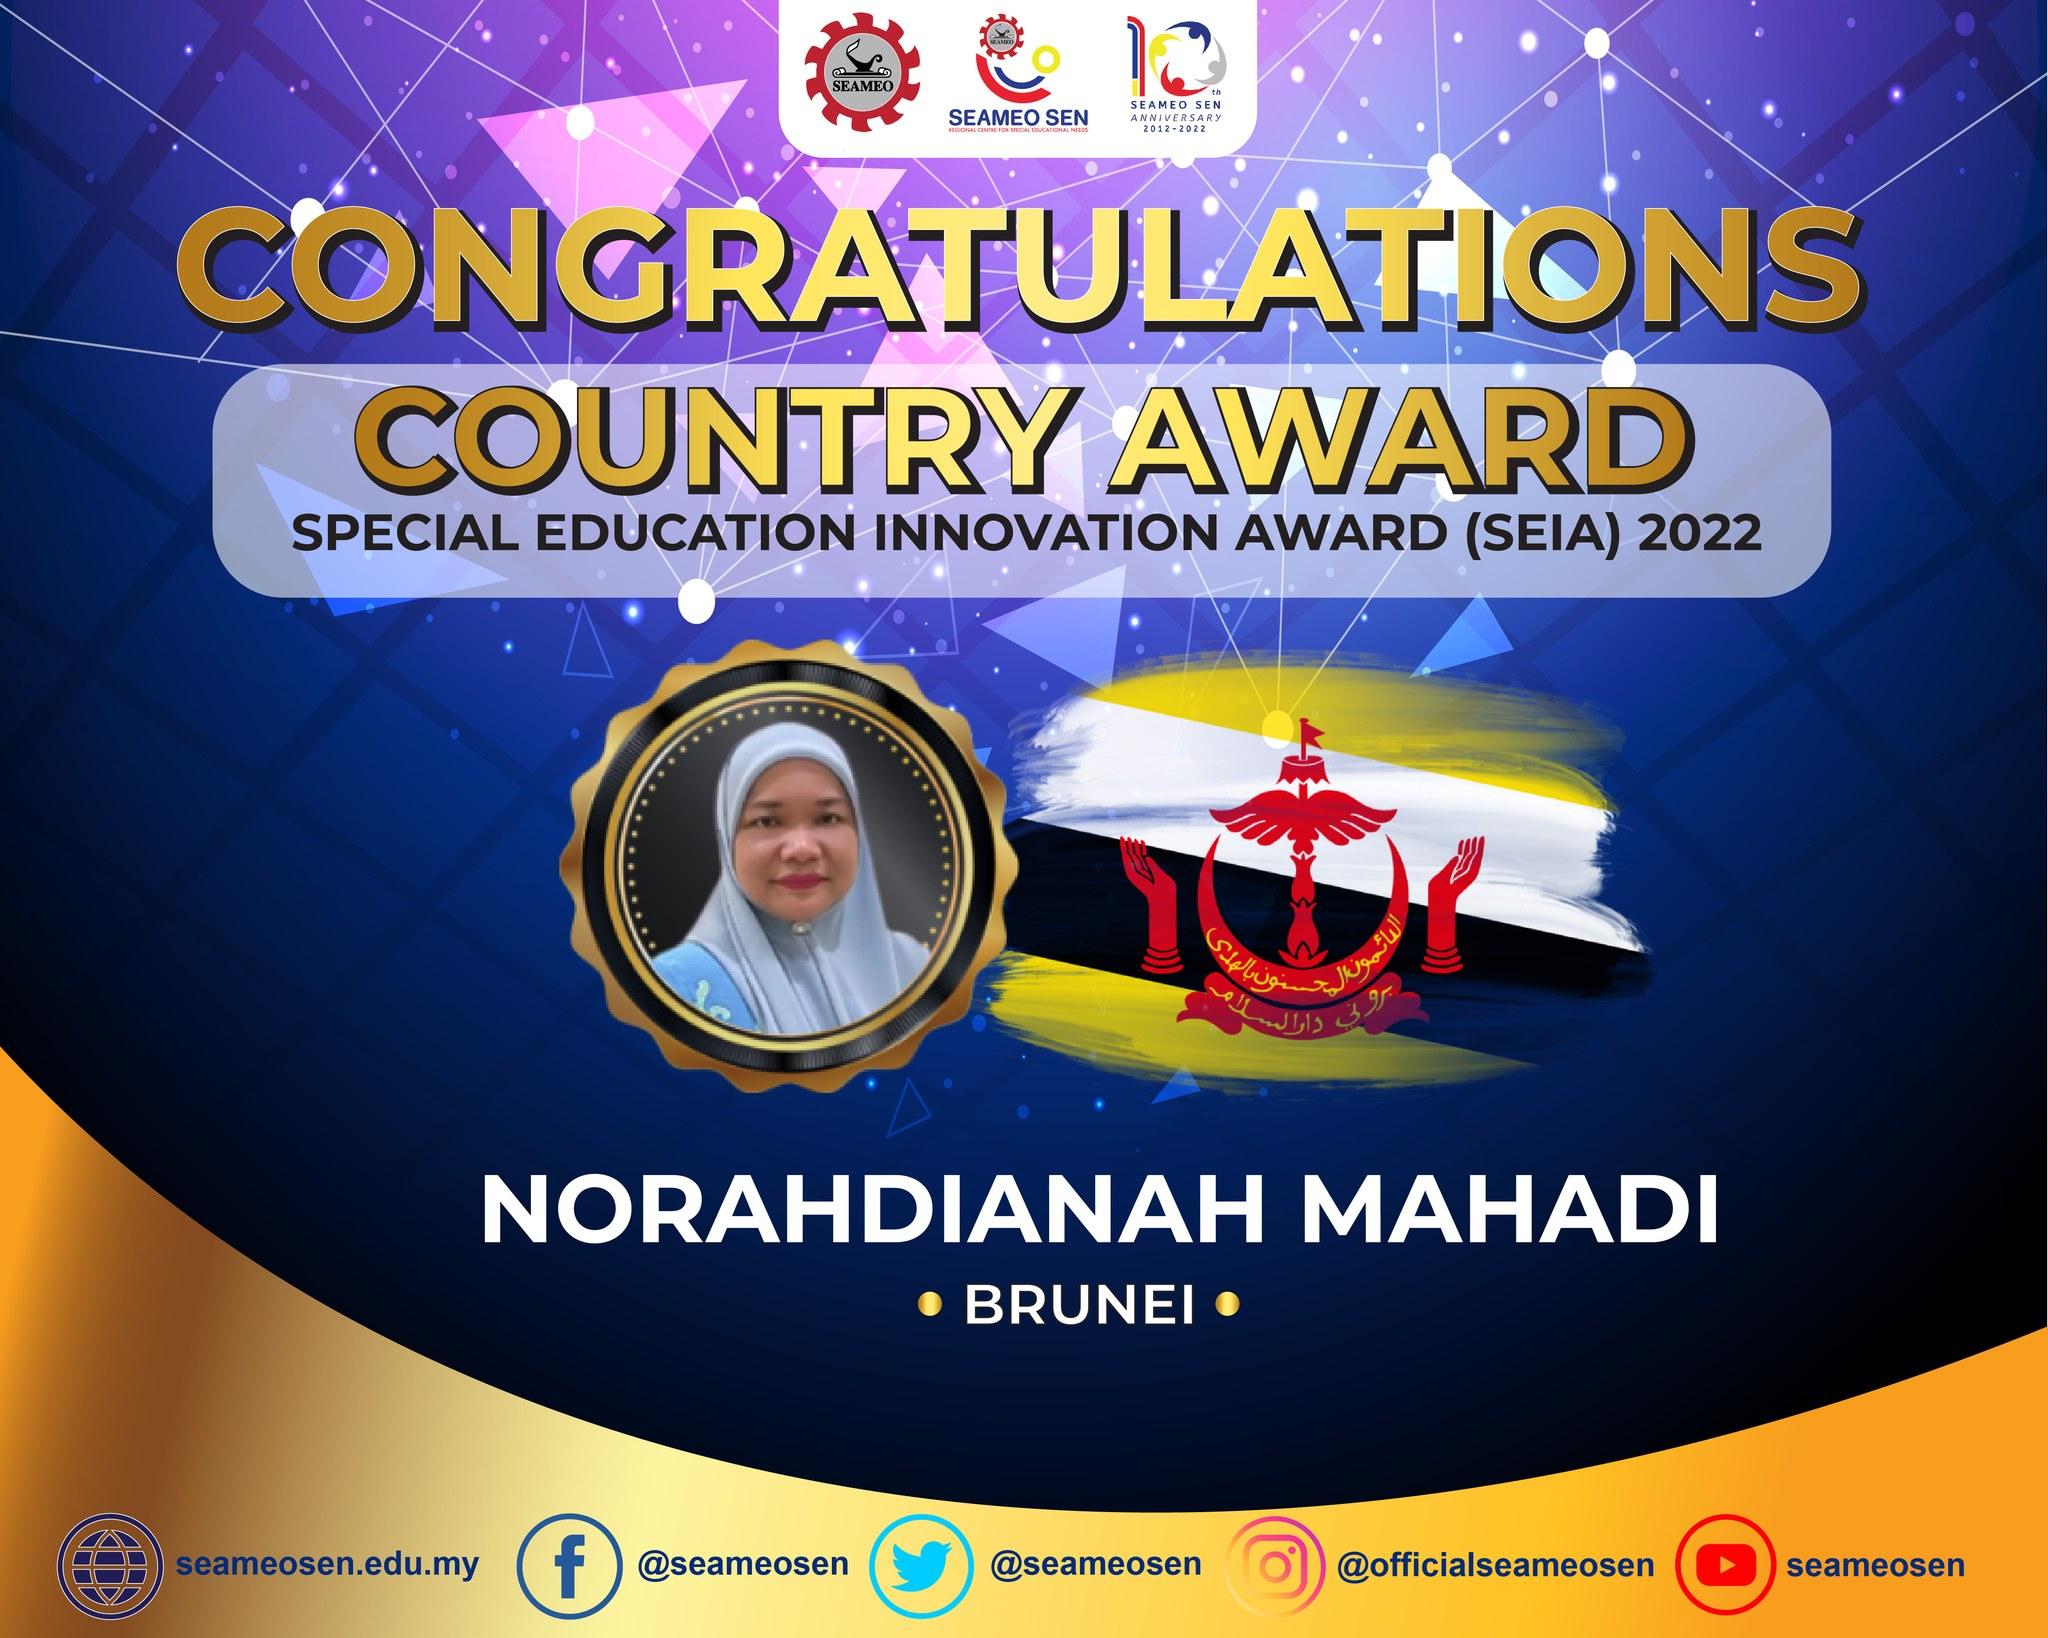 Country Award for Brunei is Mdm. Norahdianah Mahadi